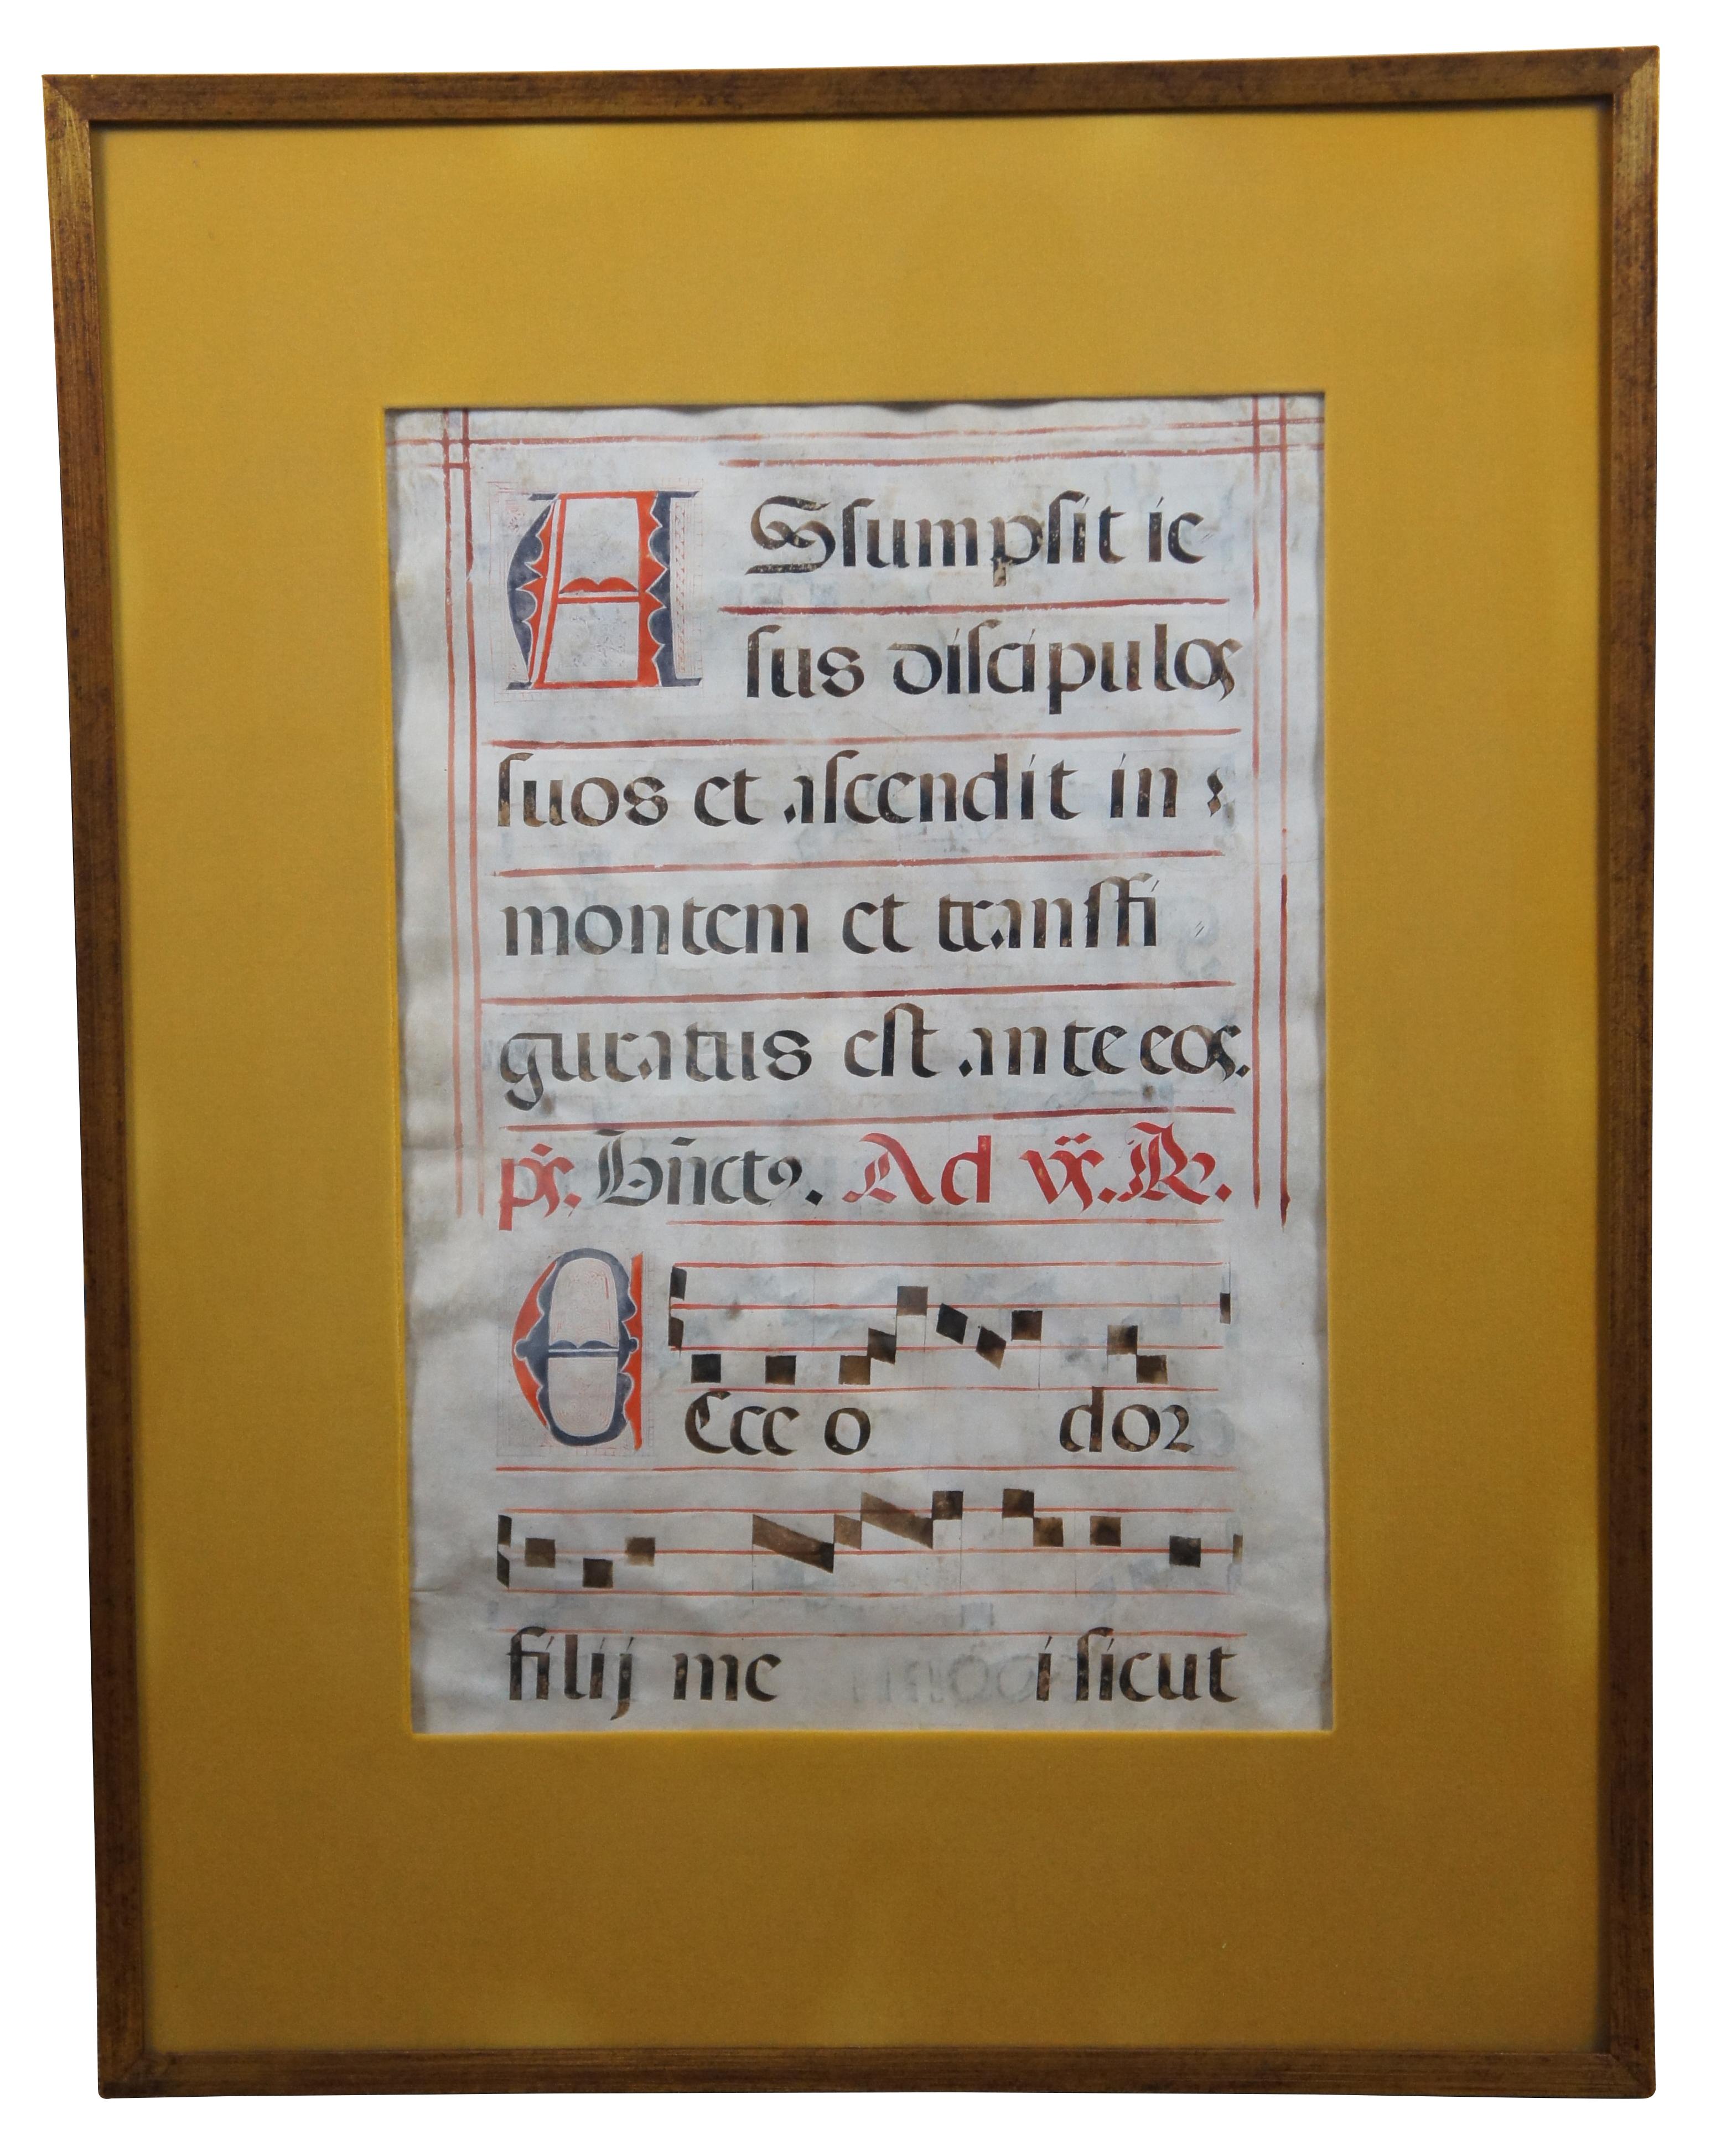 Paire de feuilles de musique antiphoniques catholiques romaines encadrées, datant du XVIIe siècle, dessinées à la main sur du vélin avec chapiteaux enluminés.

28,25